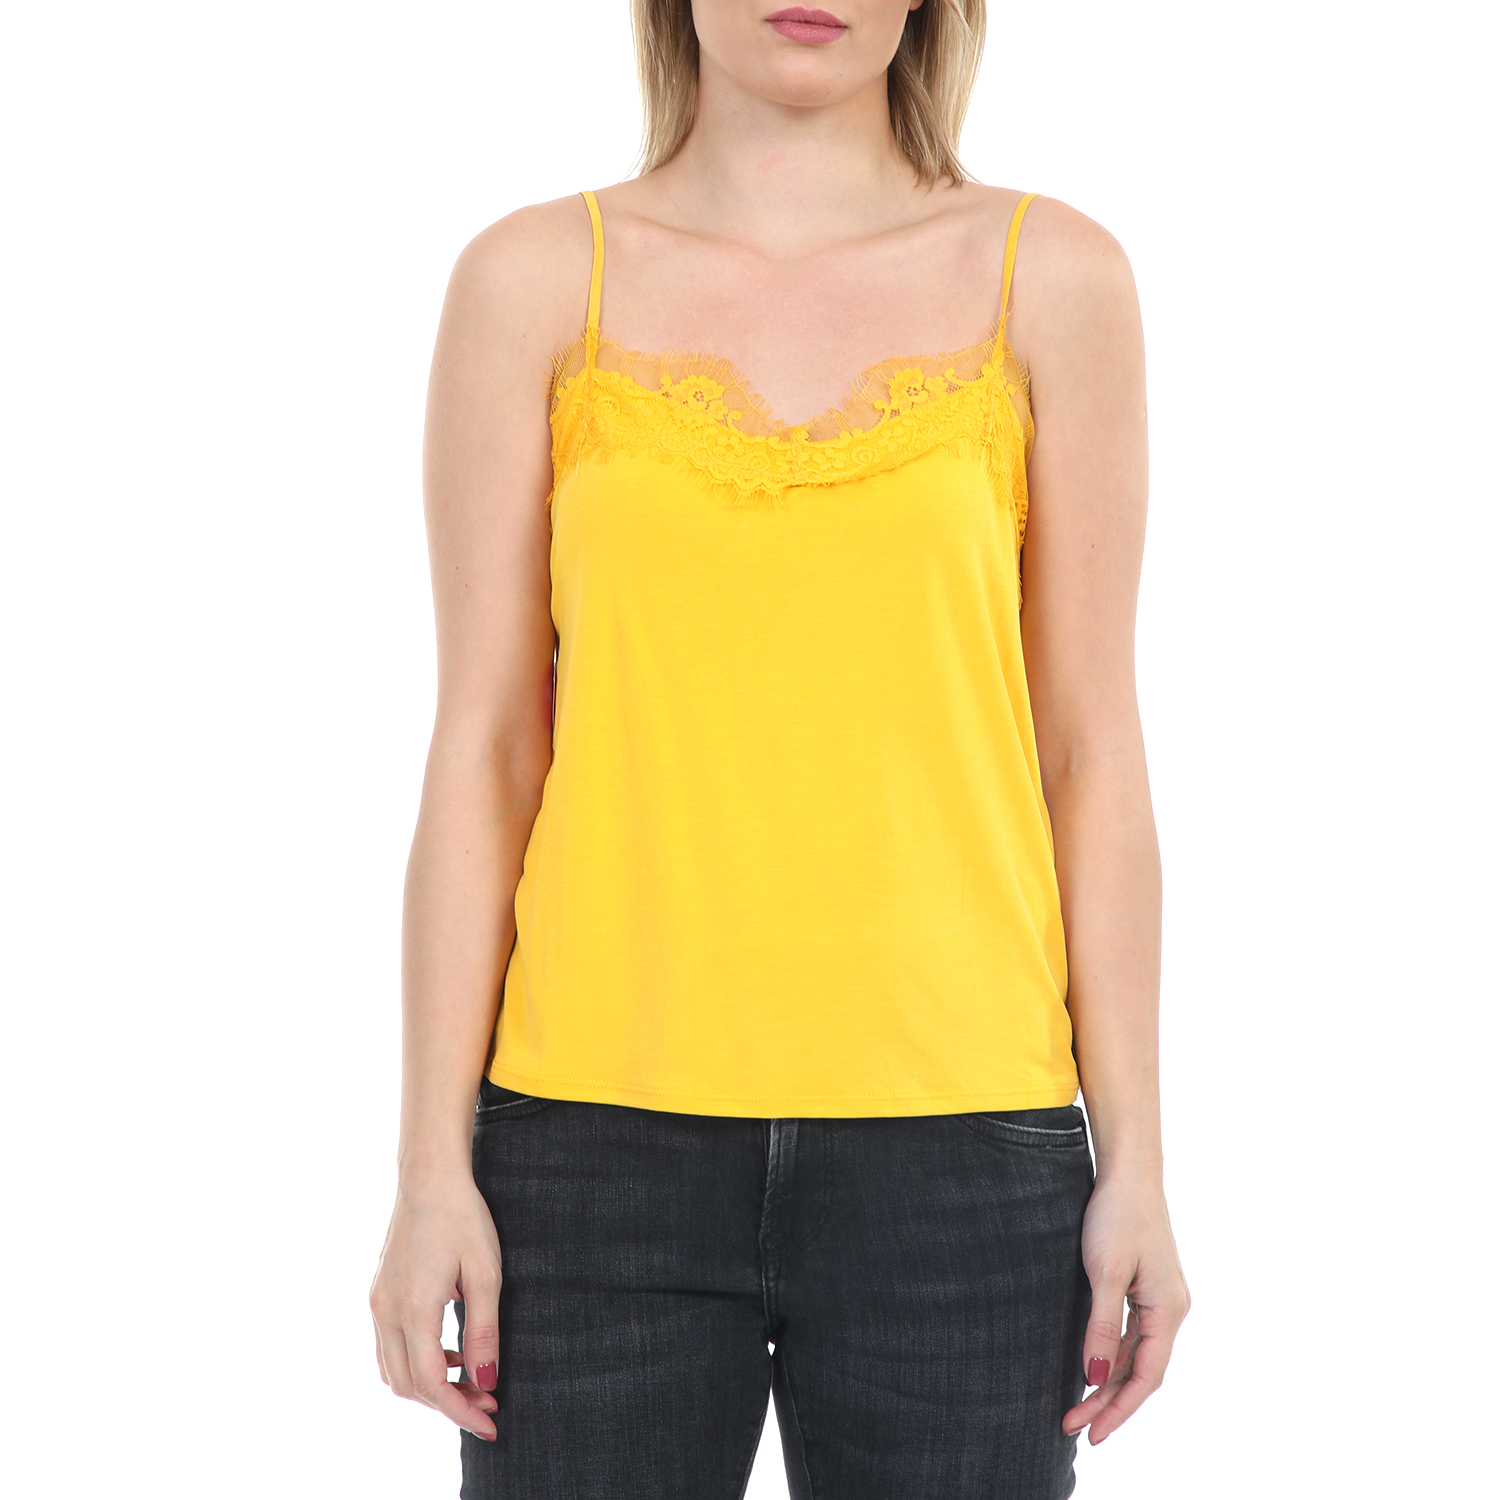 Γυναικεία/Ρούχα/Μπλούζες/Τοπ GARCIA JEANS - Γυναικείο τοπ με δαντέλα GARCIA JEANS κίτρινο